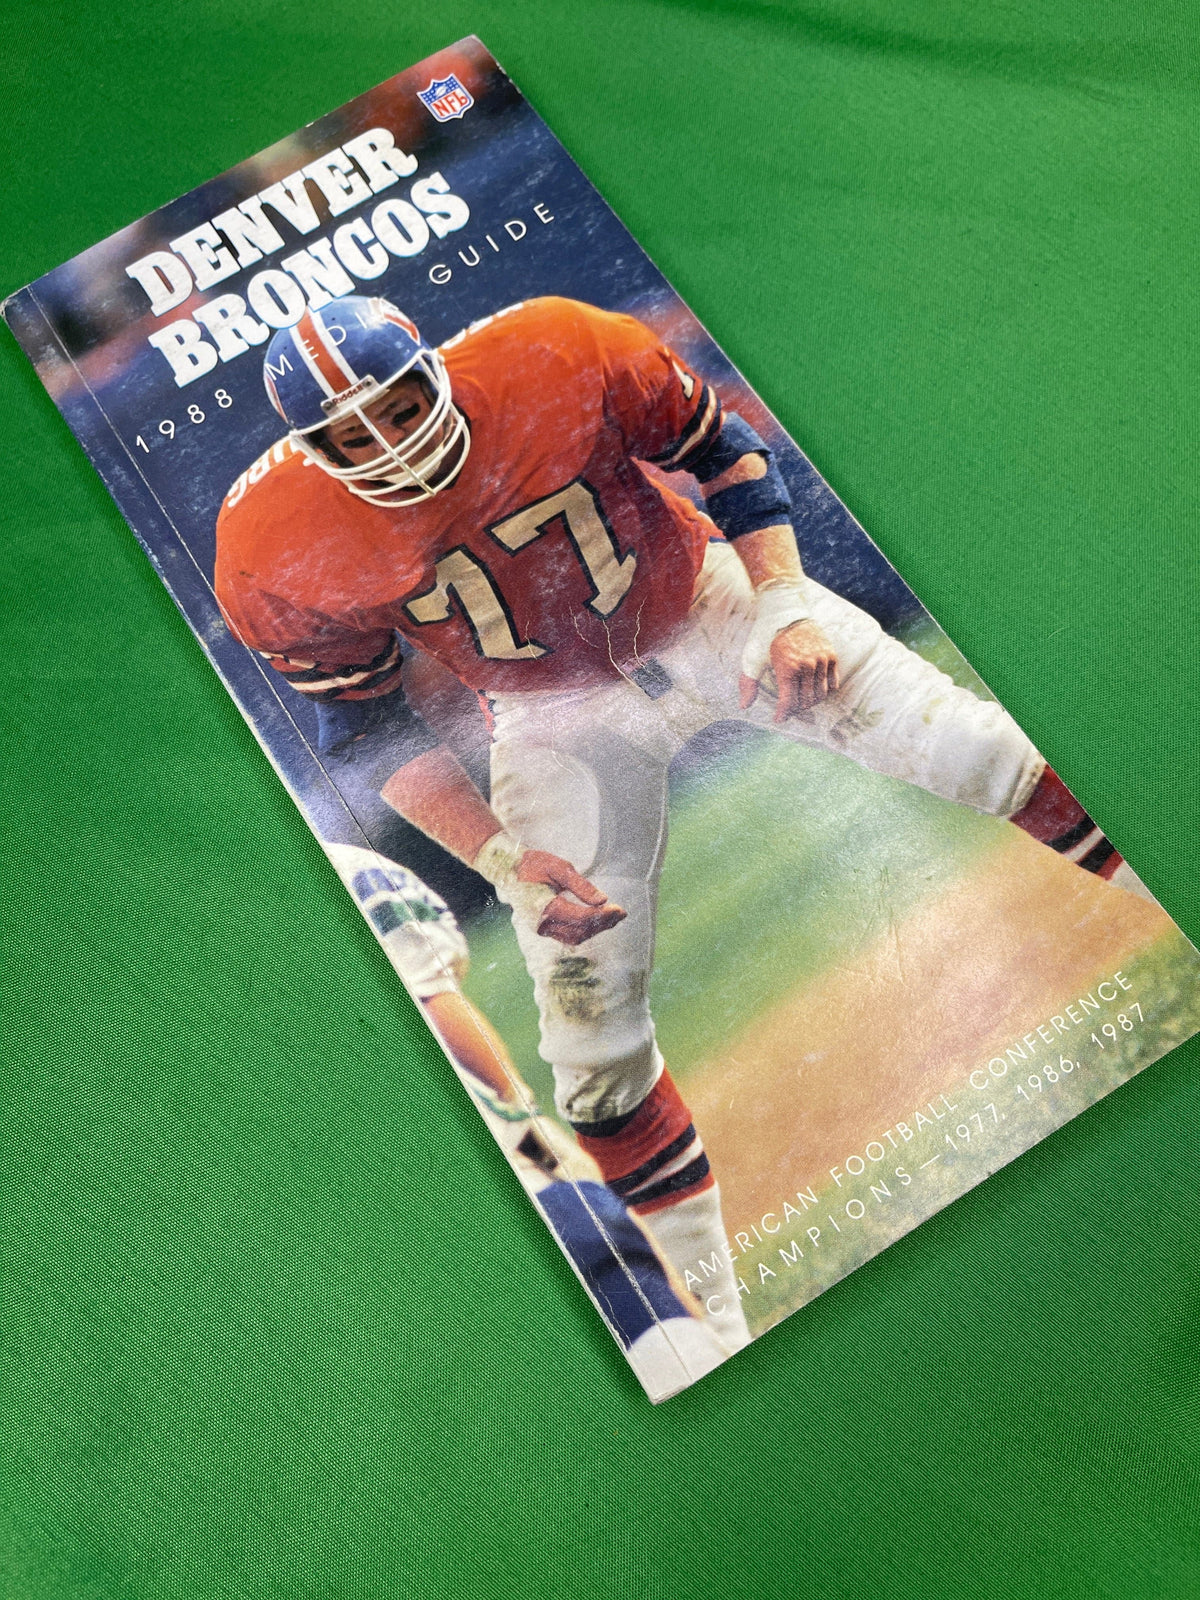 NFL Denver Broncos Vintage 1988 Media Guide Press Book Collectable